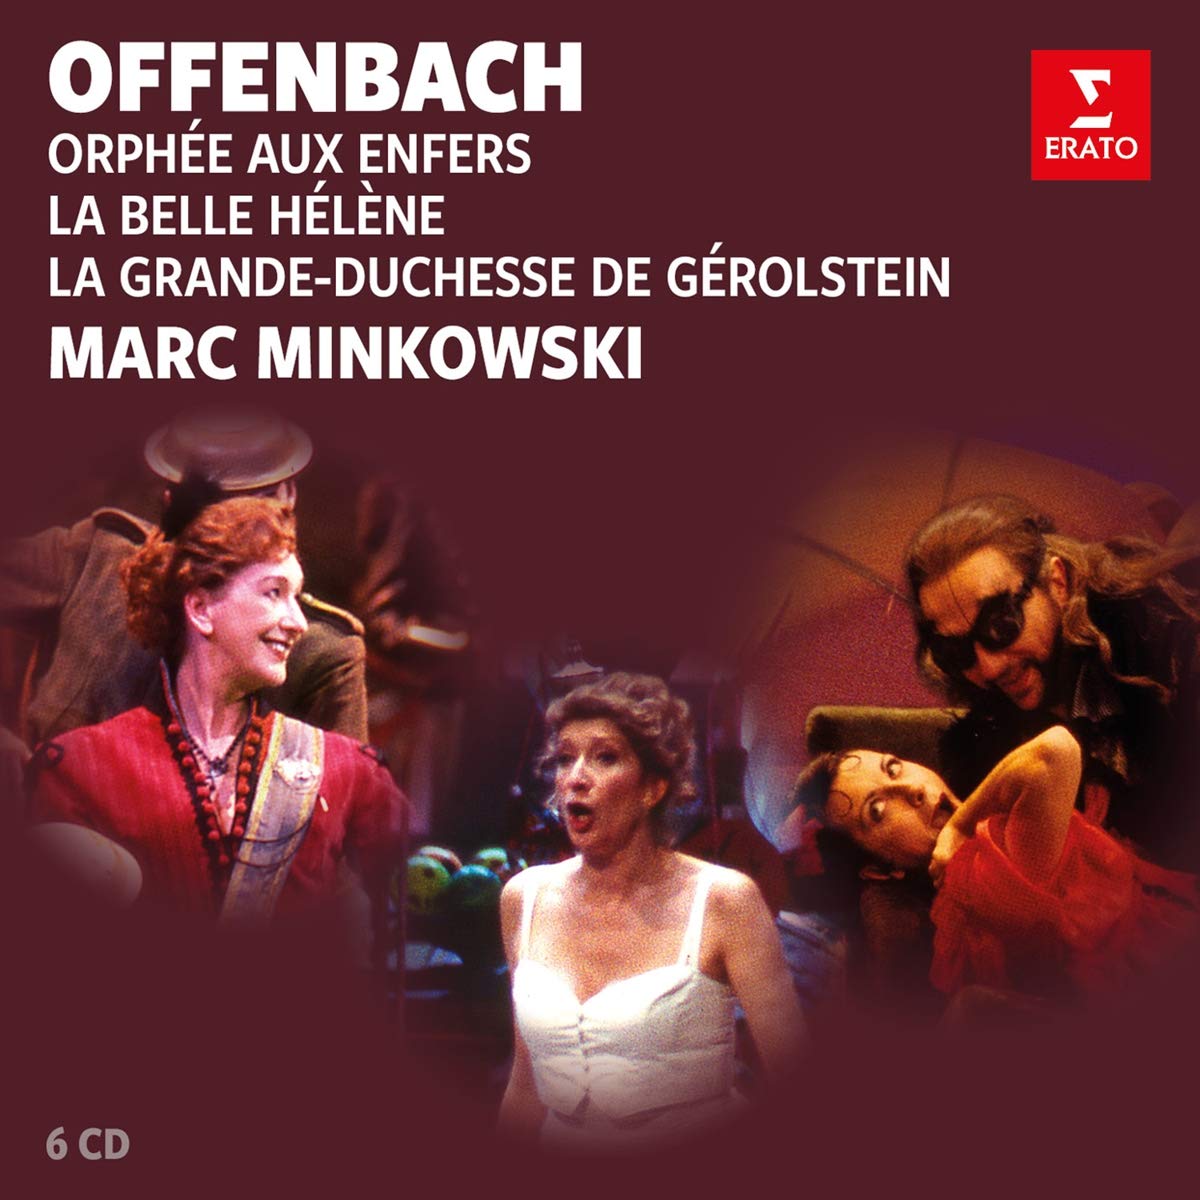 Offenbach: Orphee aux enfers, La belle Helene, La Grande-duchesse de Gerolstein | Marc Minkowski, Jacques Offenbach